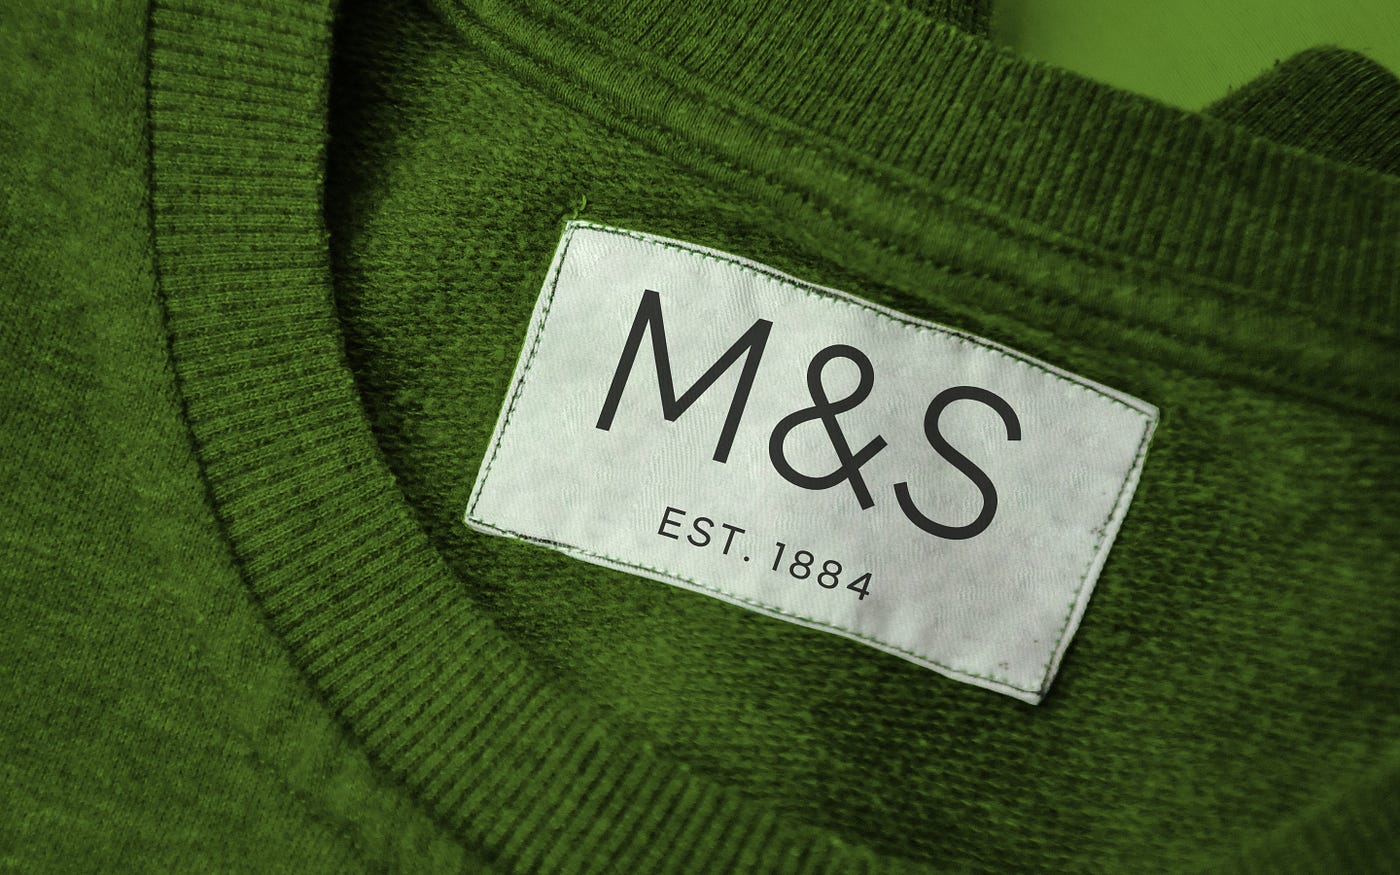 It's not just branding, it's Marks & Spencer branding, by Stewart Hodgson